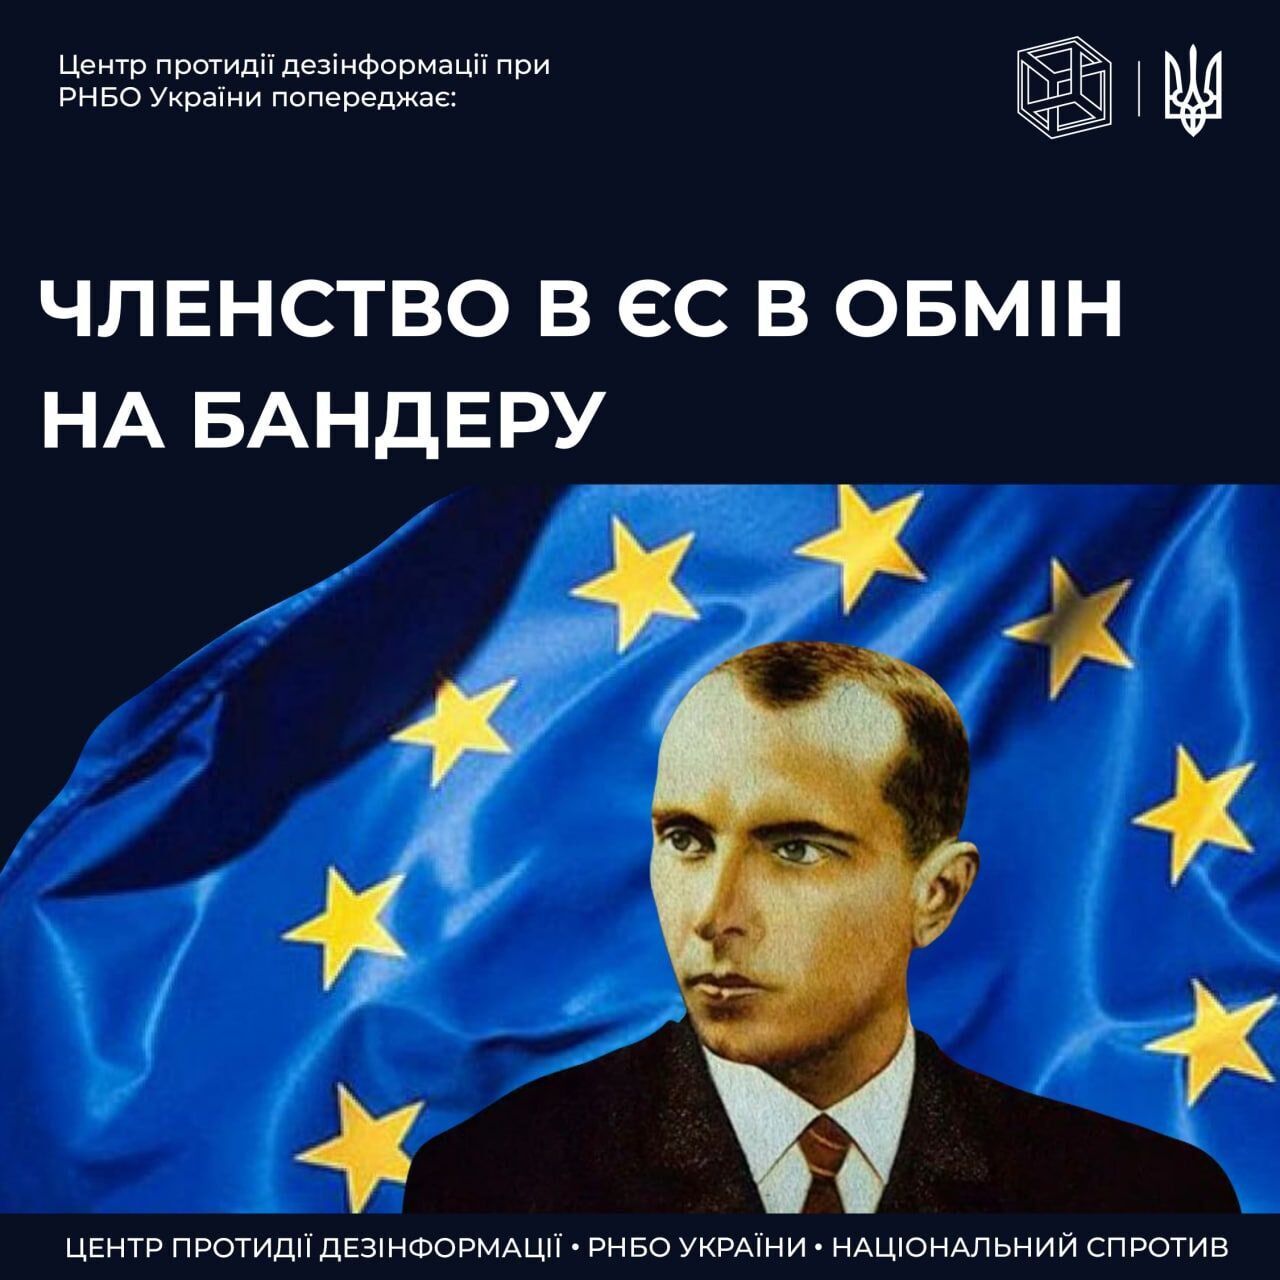 Росія запустила фейк про вимогу ЄС до України припинити прославляти Бандеру